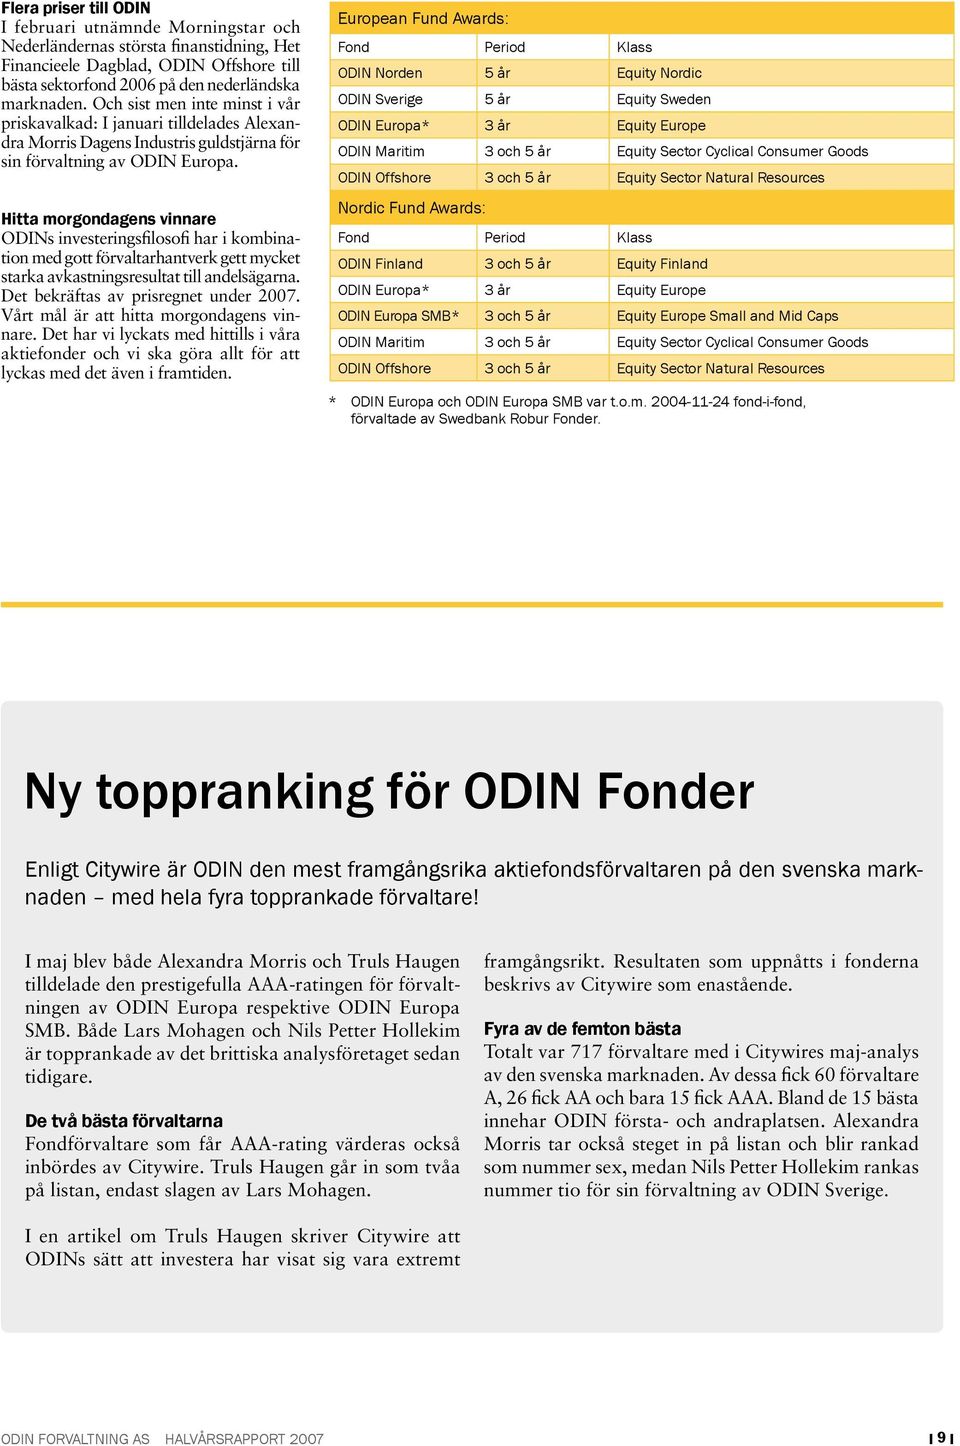 Hitta morgondagens vinnare ODINs investeringsfilosofi har i kombination med gott förvaltarhantverk gett mycket starka avkastningsresultat till andelsägarna. Det bekräftas av prisregnet under 2007.